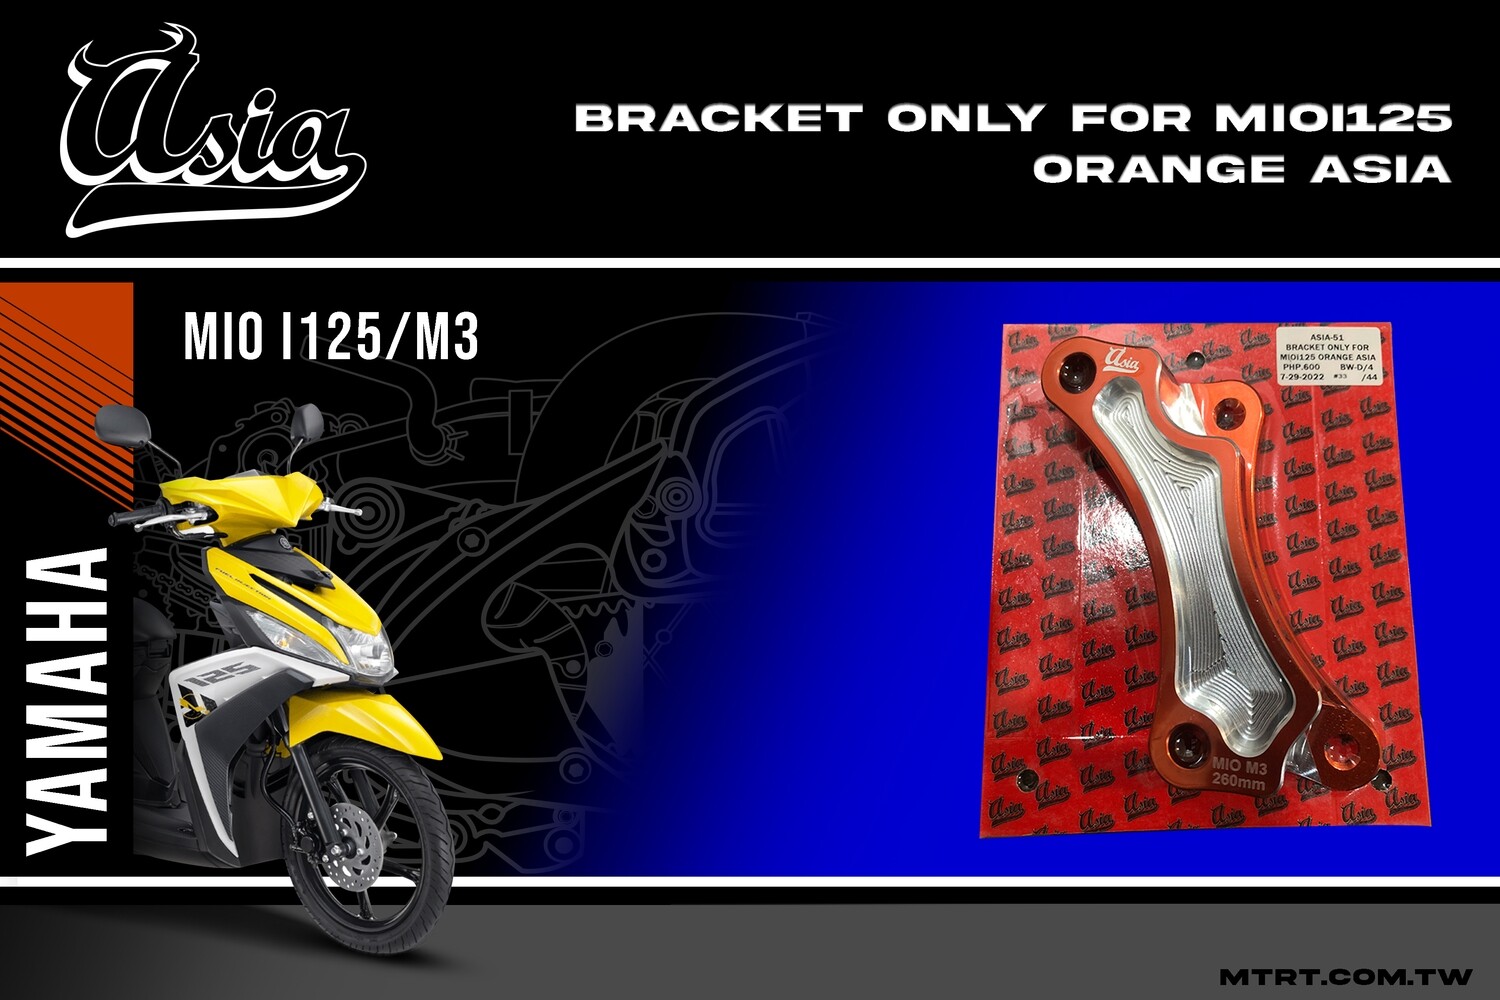 BRACKET ONLY for MIOi125 ORANGE ASIA